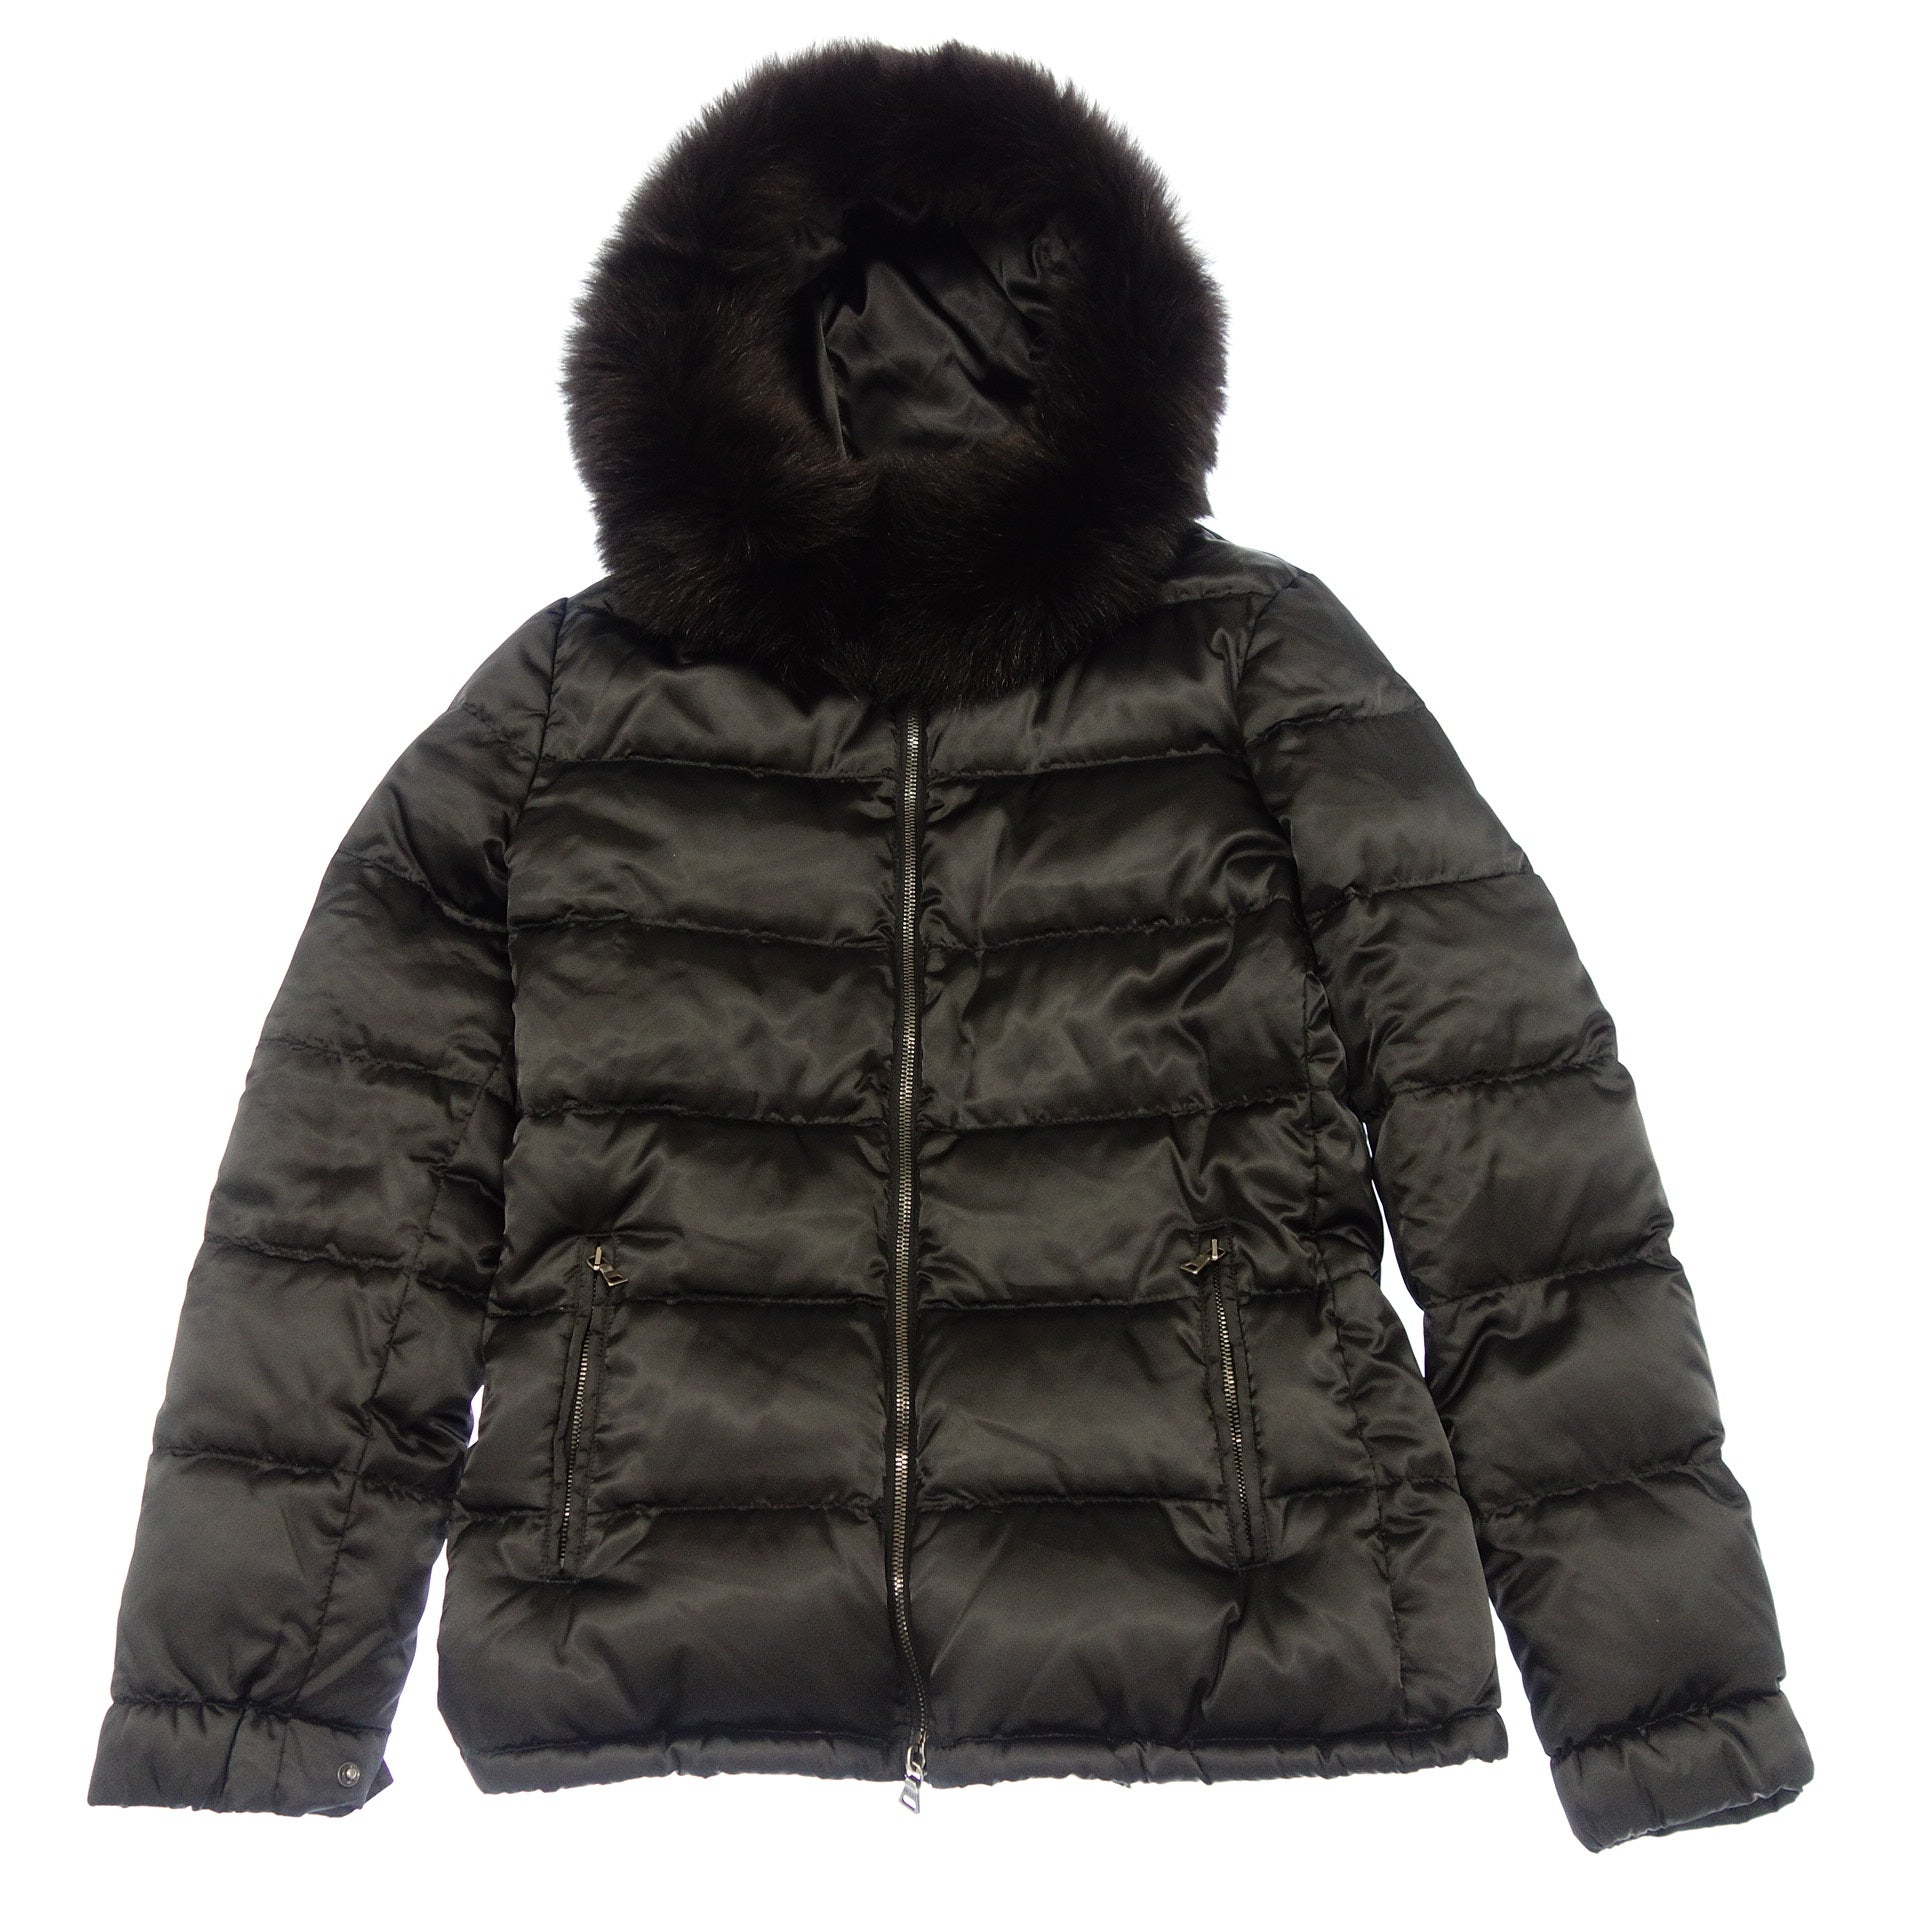 【美品】PRADA プラダ 毛皮コート コート ベルト付き ブラウン 42 Lさざえブランド